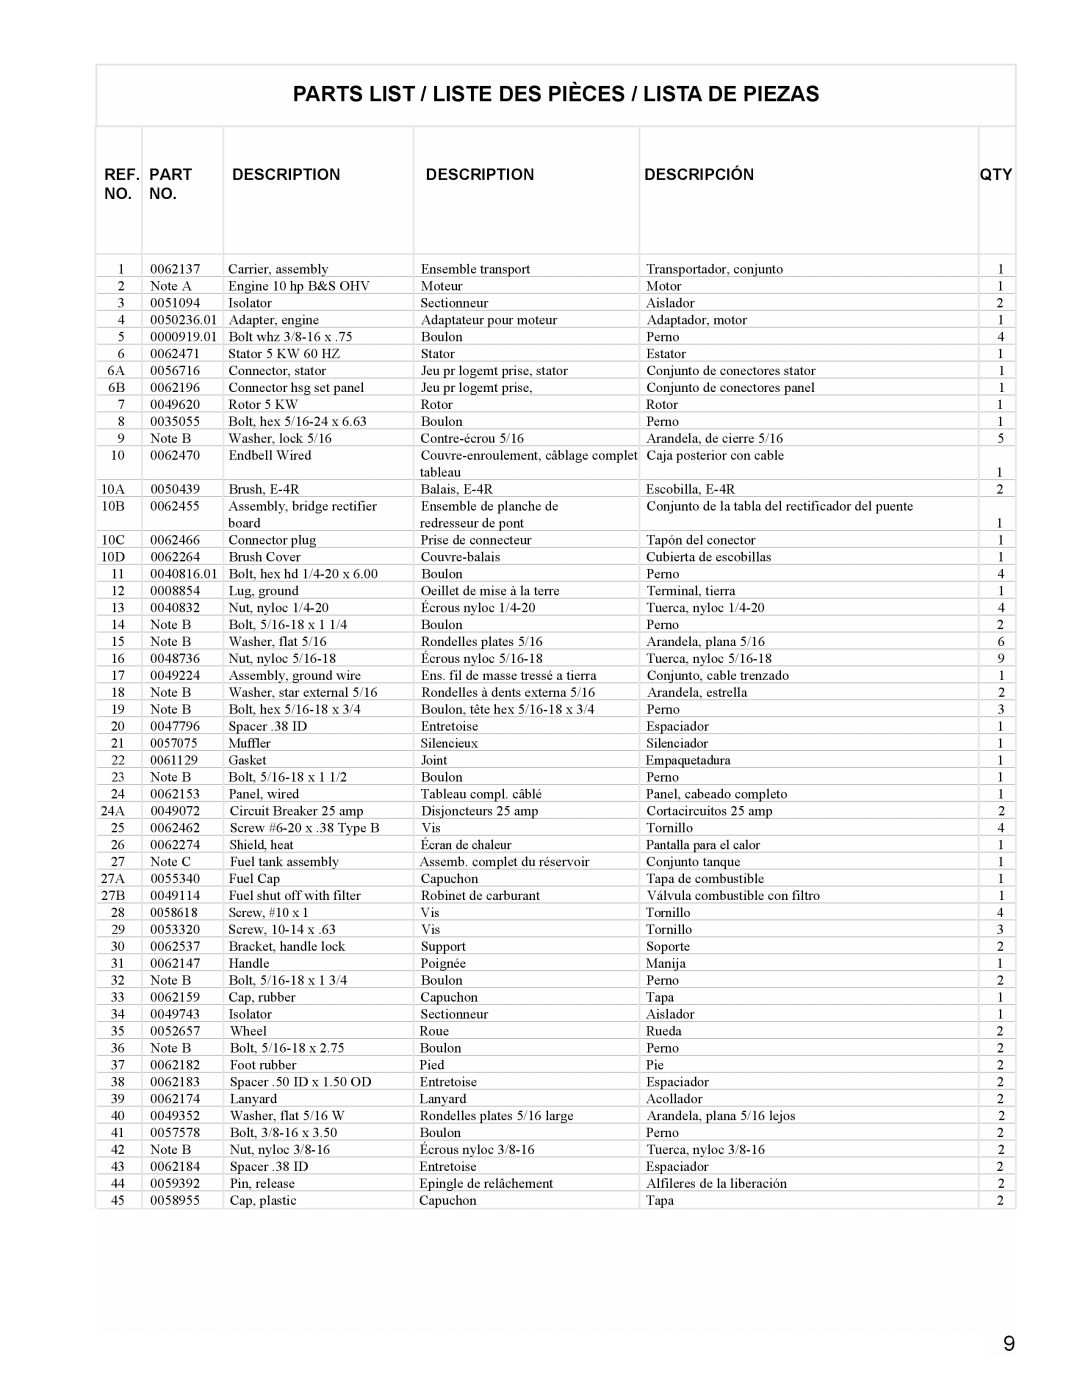 Powermate PM0545007.01 manual Parts List / Liste Des Pièces / Lista De Piezas, Description, Descripción 